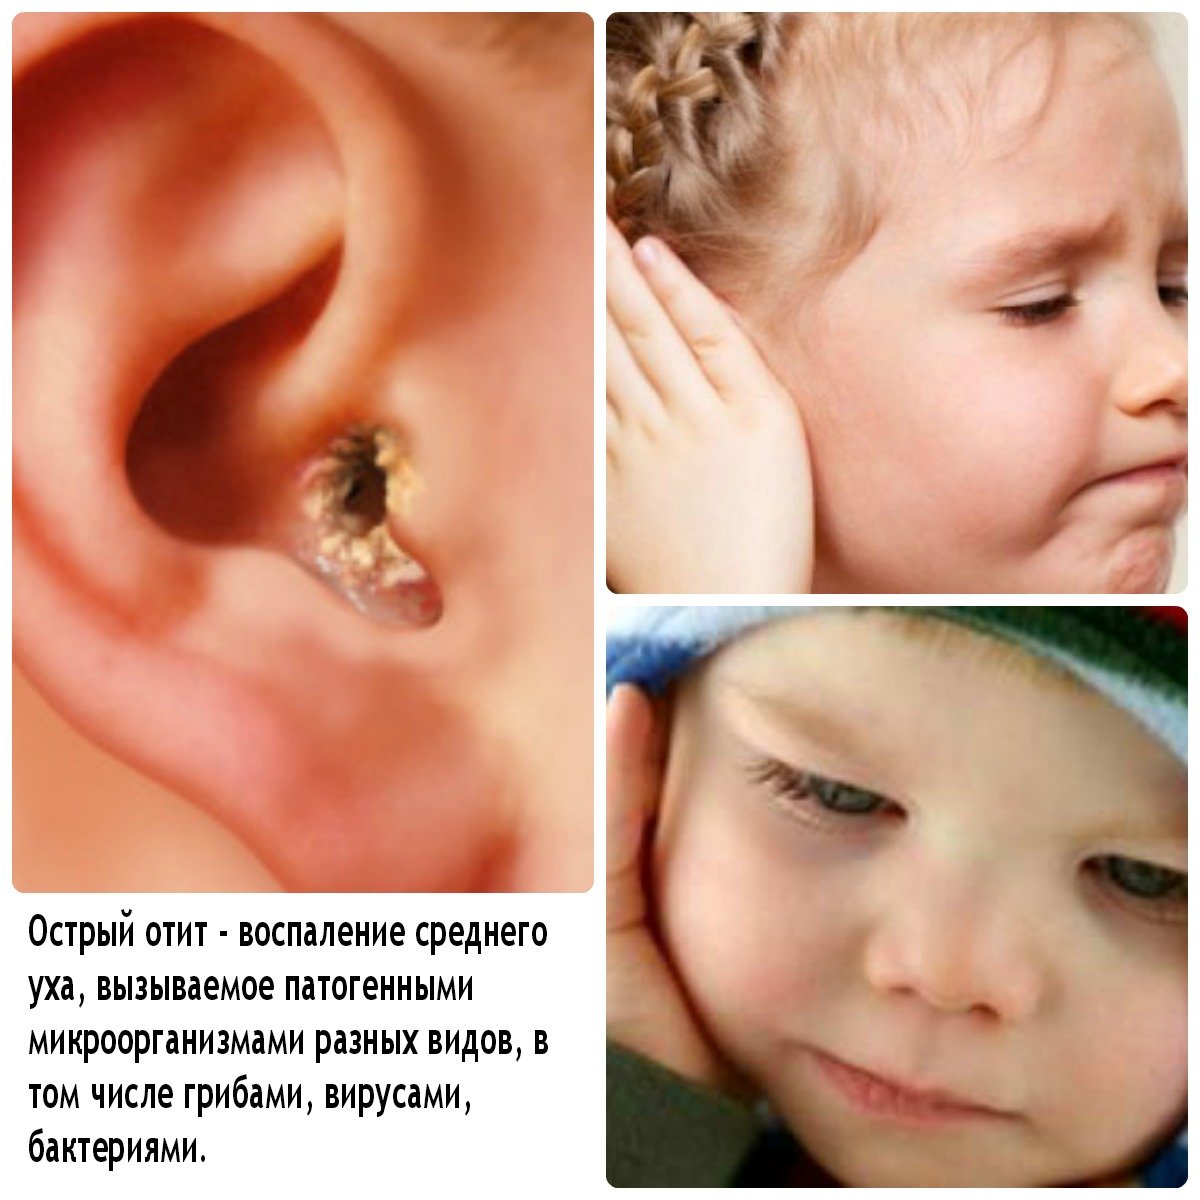 ostriysredniyotitudeteyfoto DB25B42F - Гнойный отит у ребенка (40 фото): симптомы, признаки и лечение острого гнойного отита и среднего уха в домашних условиях у новорожденного